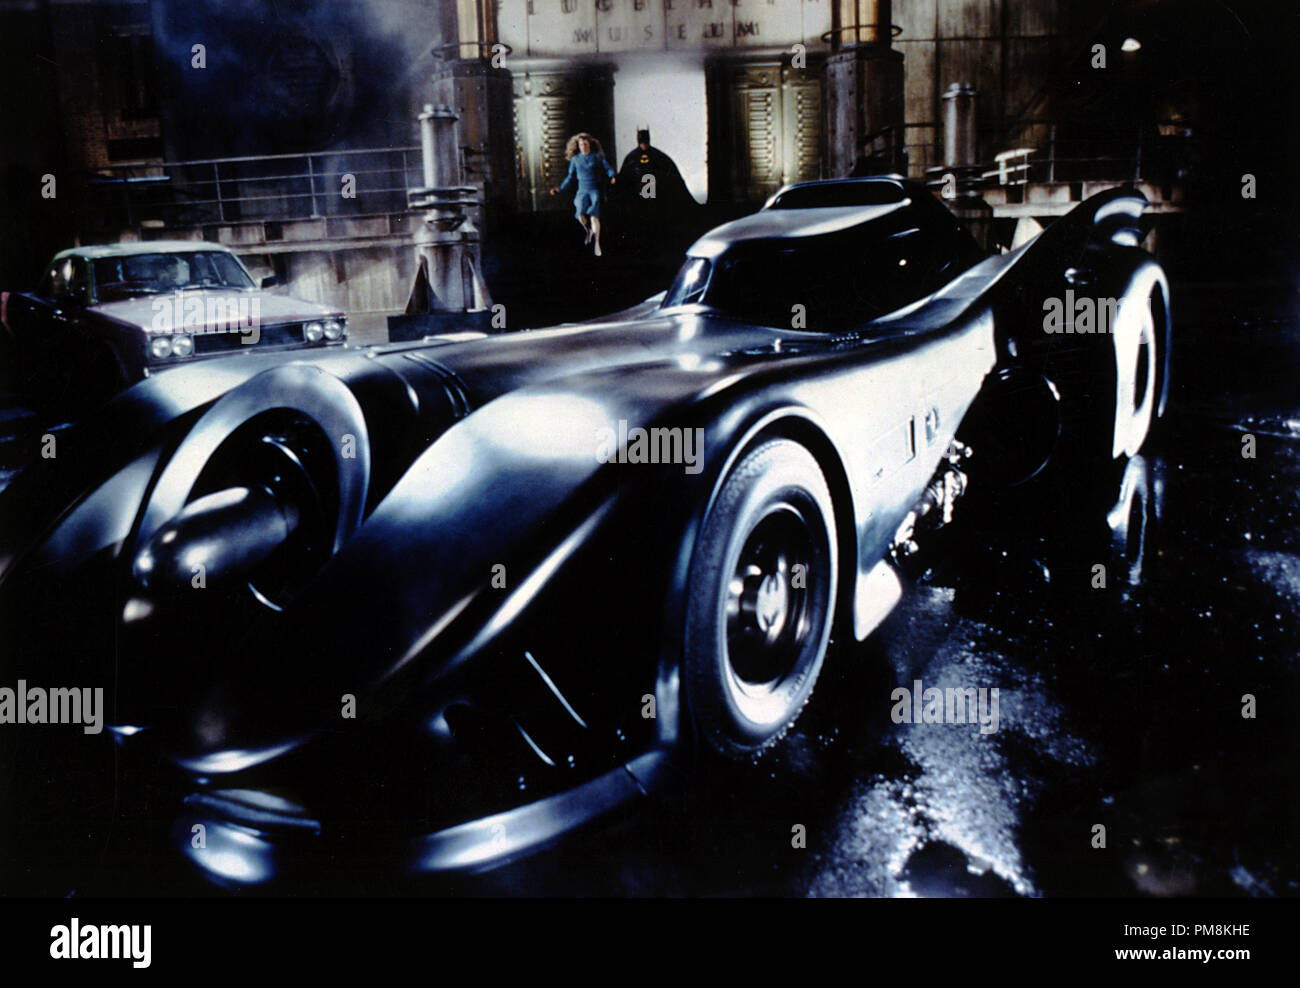 Film Still oder Werbung noch von 'Batman' das Batmobil © 1989 Warner Alle Rechte vorbehalten Datei Referenz # 31623174 THA für die redaktionelle Nutzung nur Stockfoto